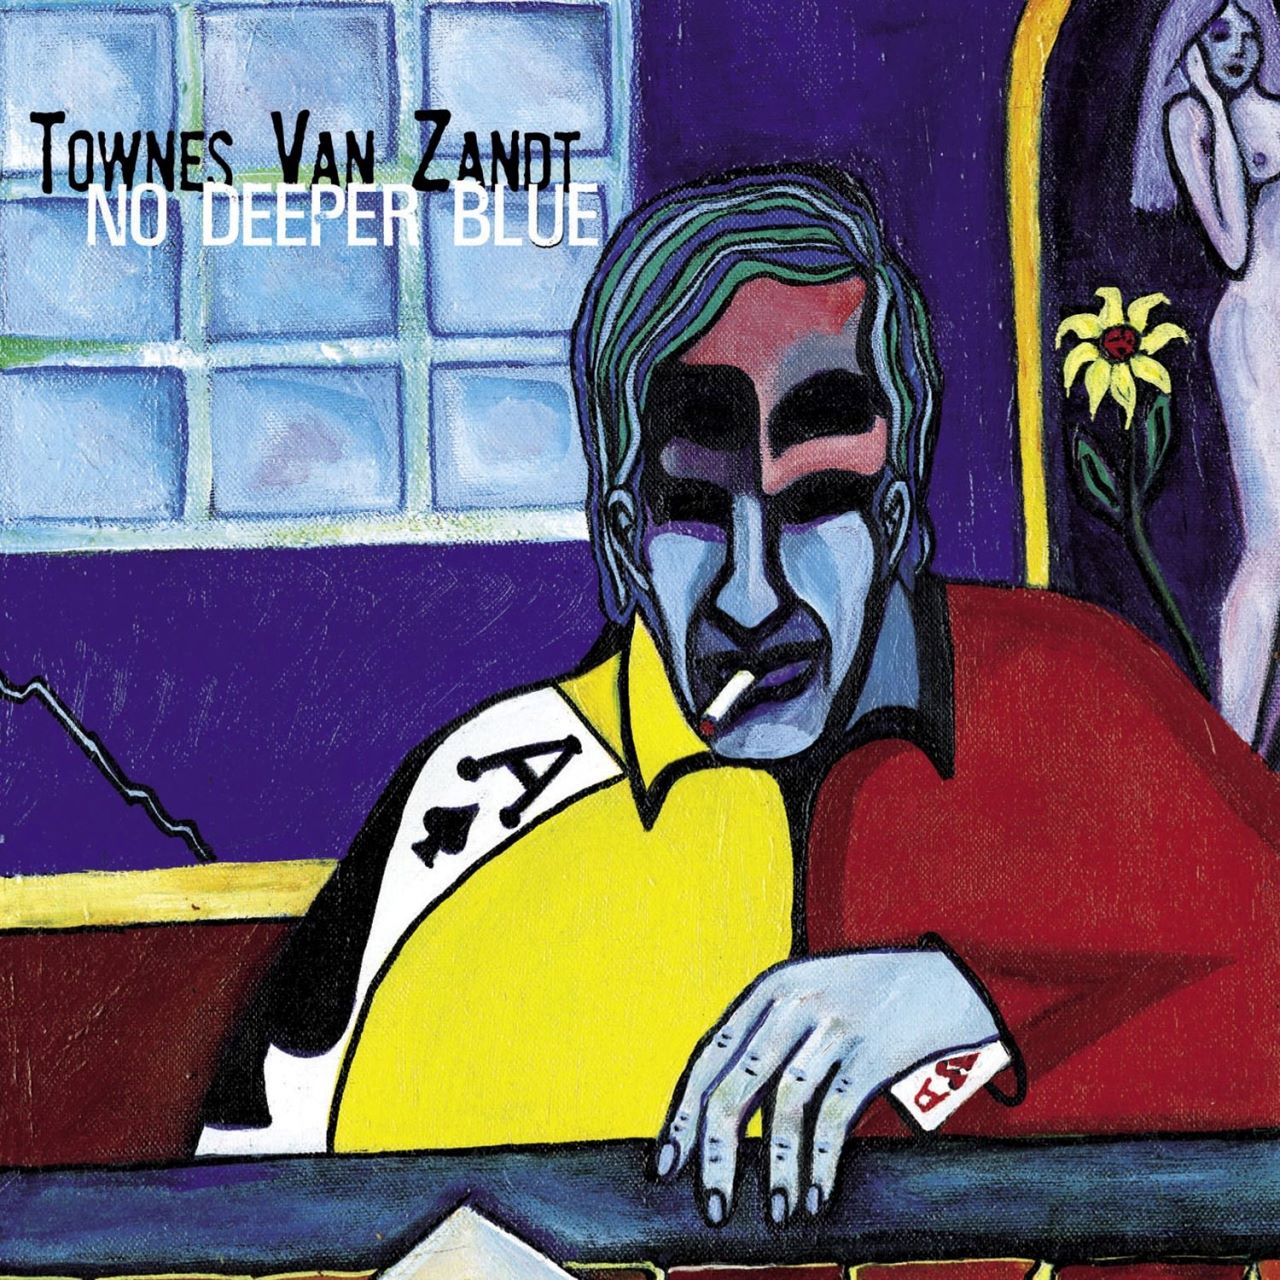 Townes Van Zandt - No Deeper Blue cover album